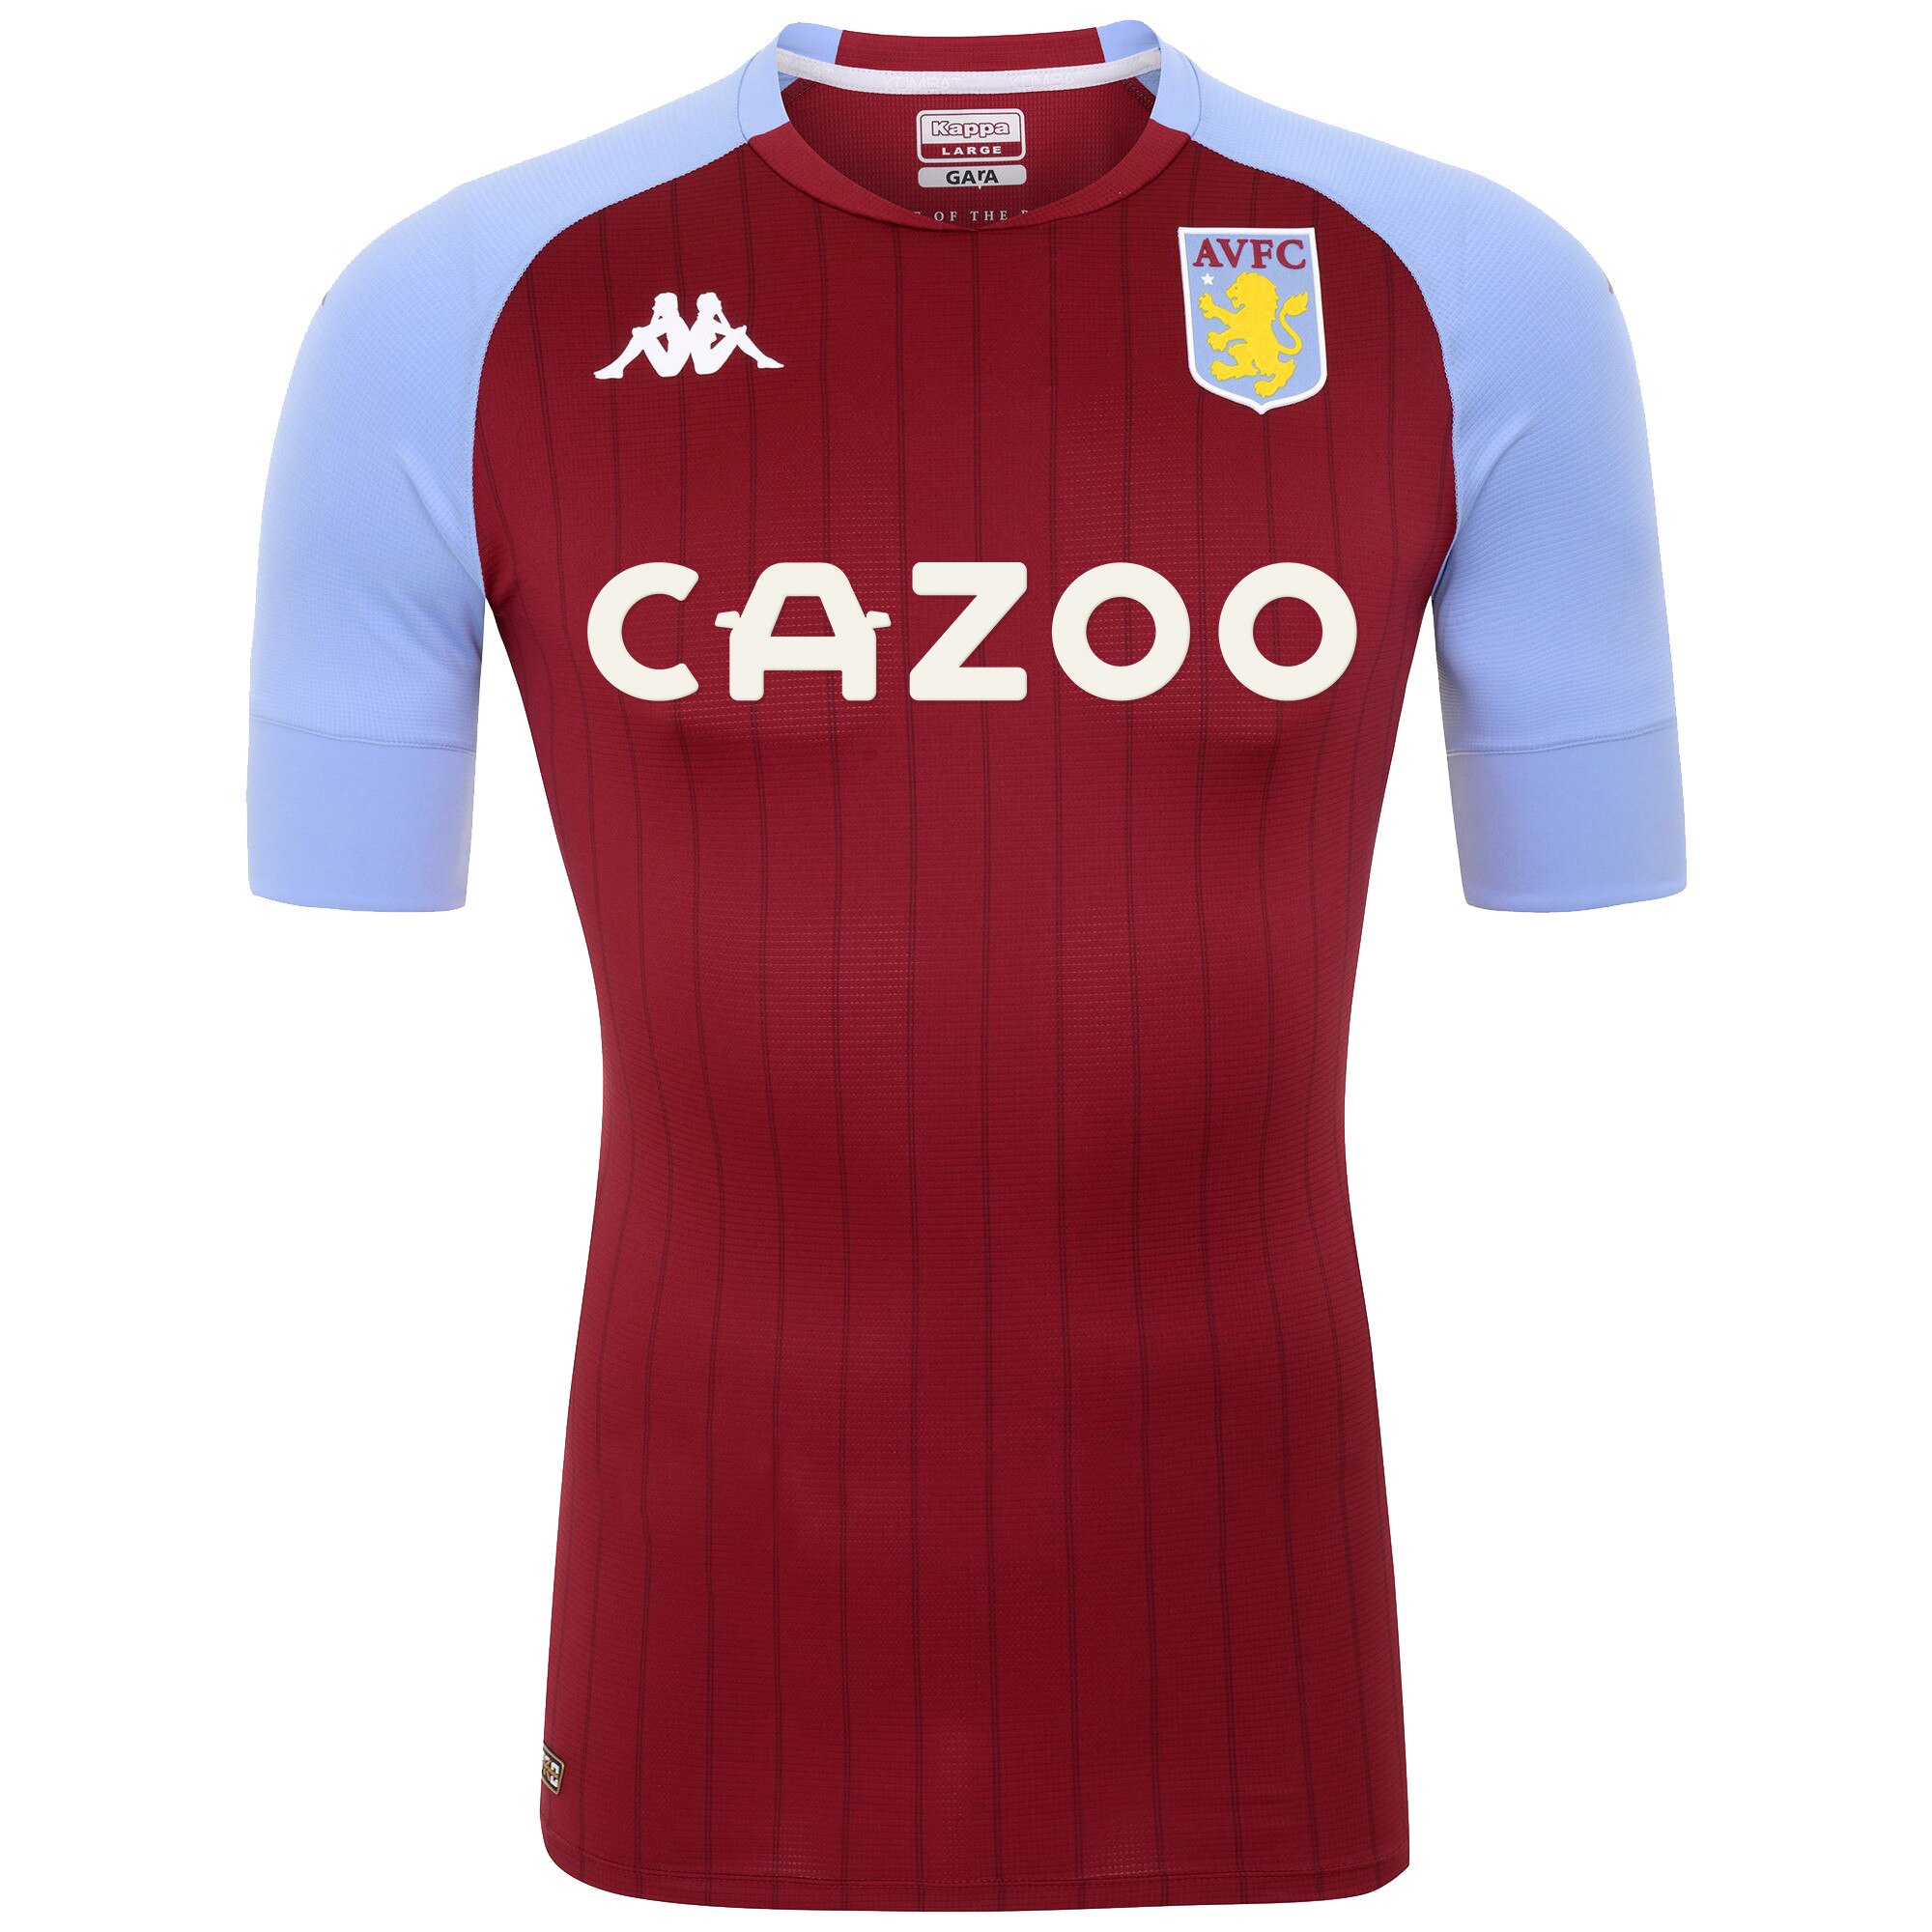 Aston Villa Home Pro Shirt 2020-21 with Konsa 4 printing